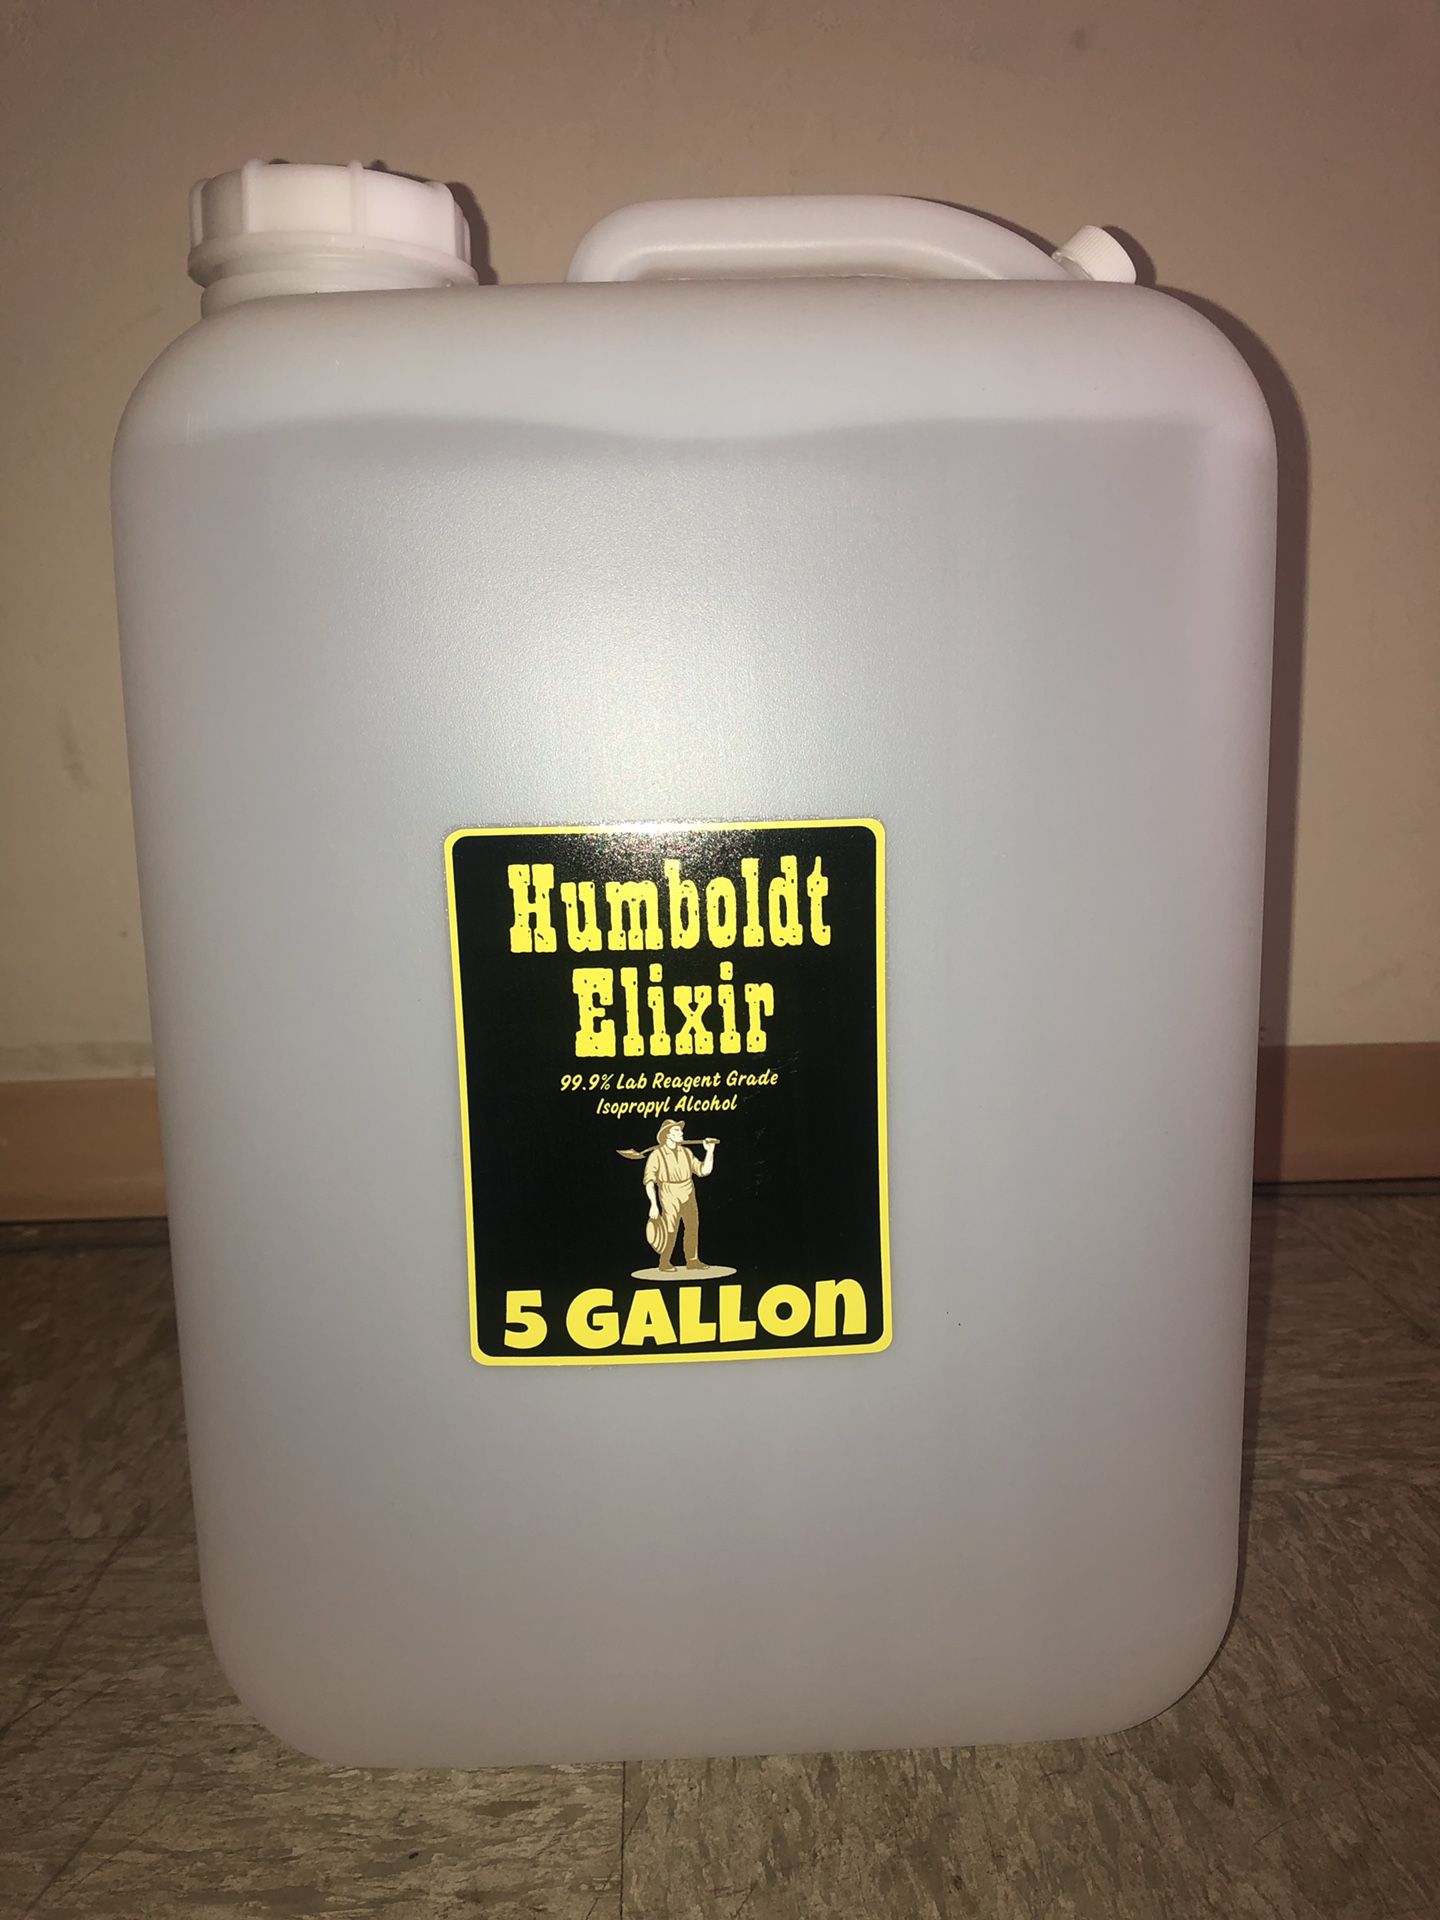 Humboldt Elixir 99.99% Isopropyl Alcohol